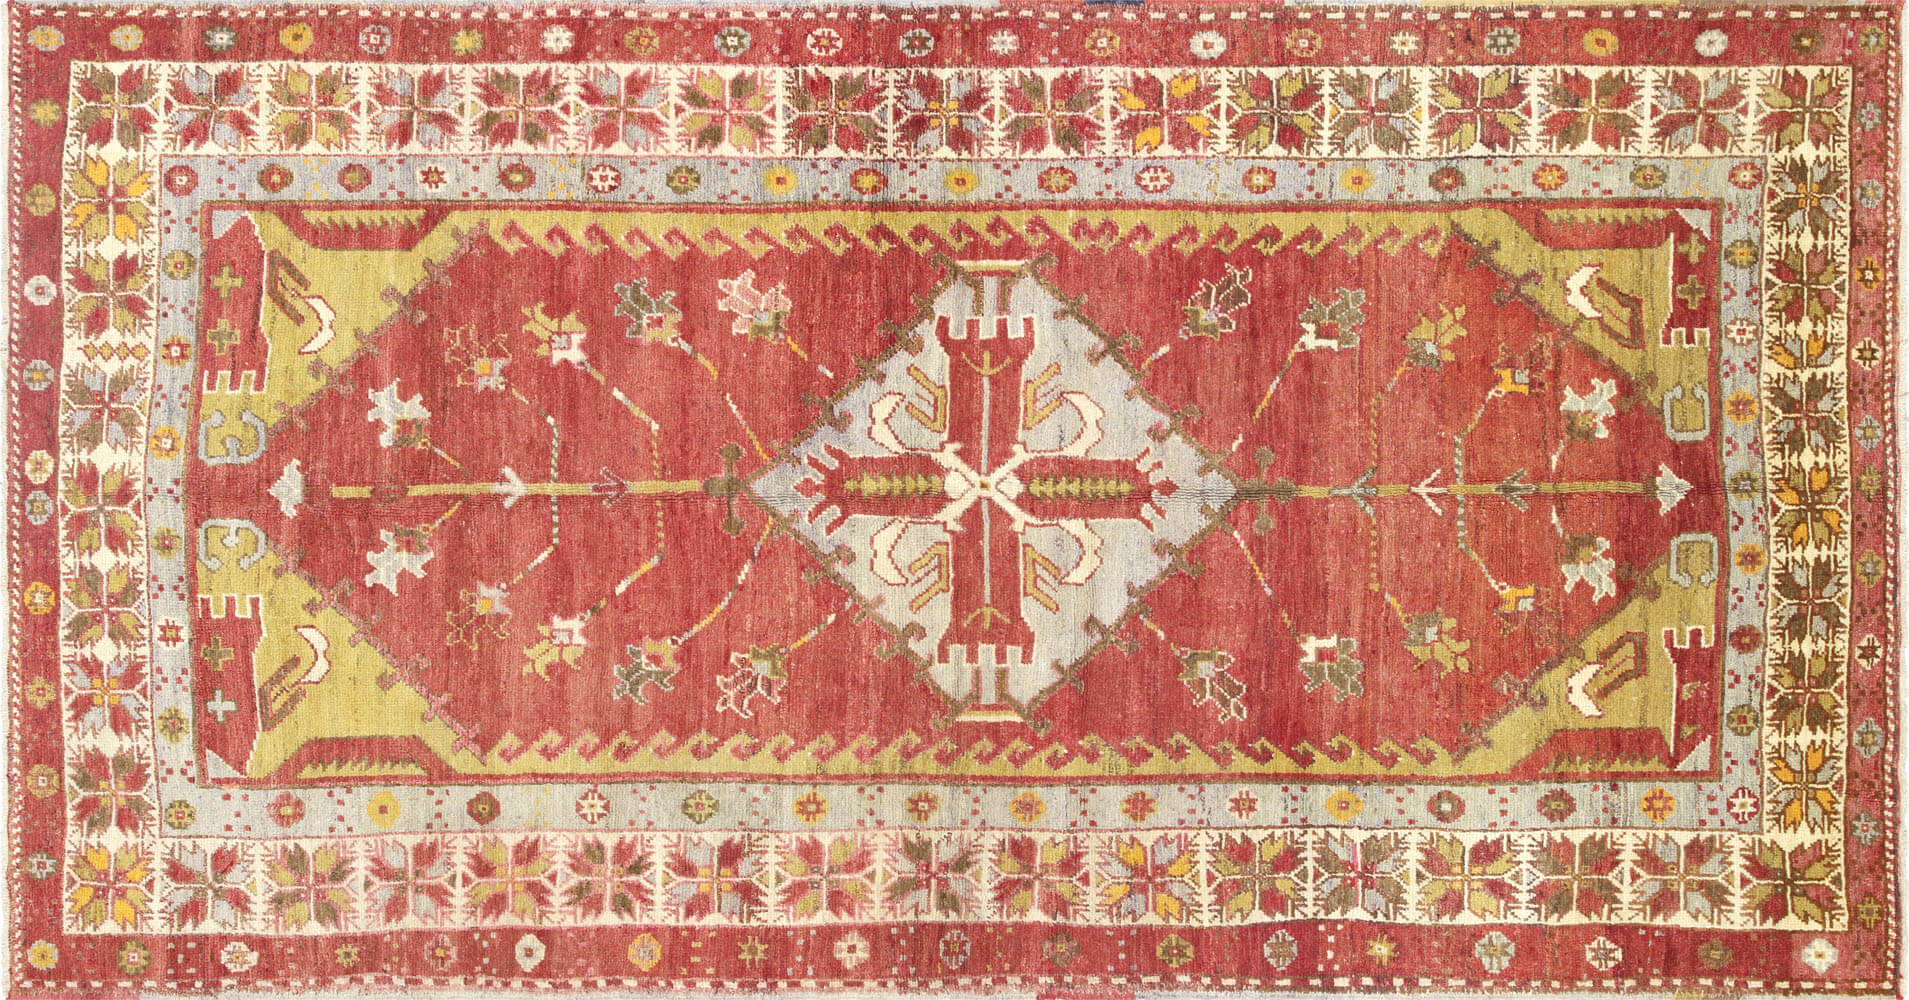 Vintage Turkish Oushak Carpet - 5'3" x 10'2"